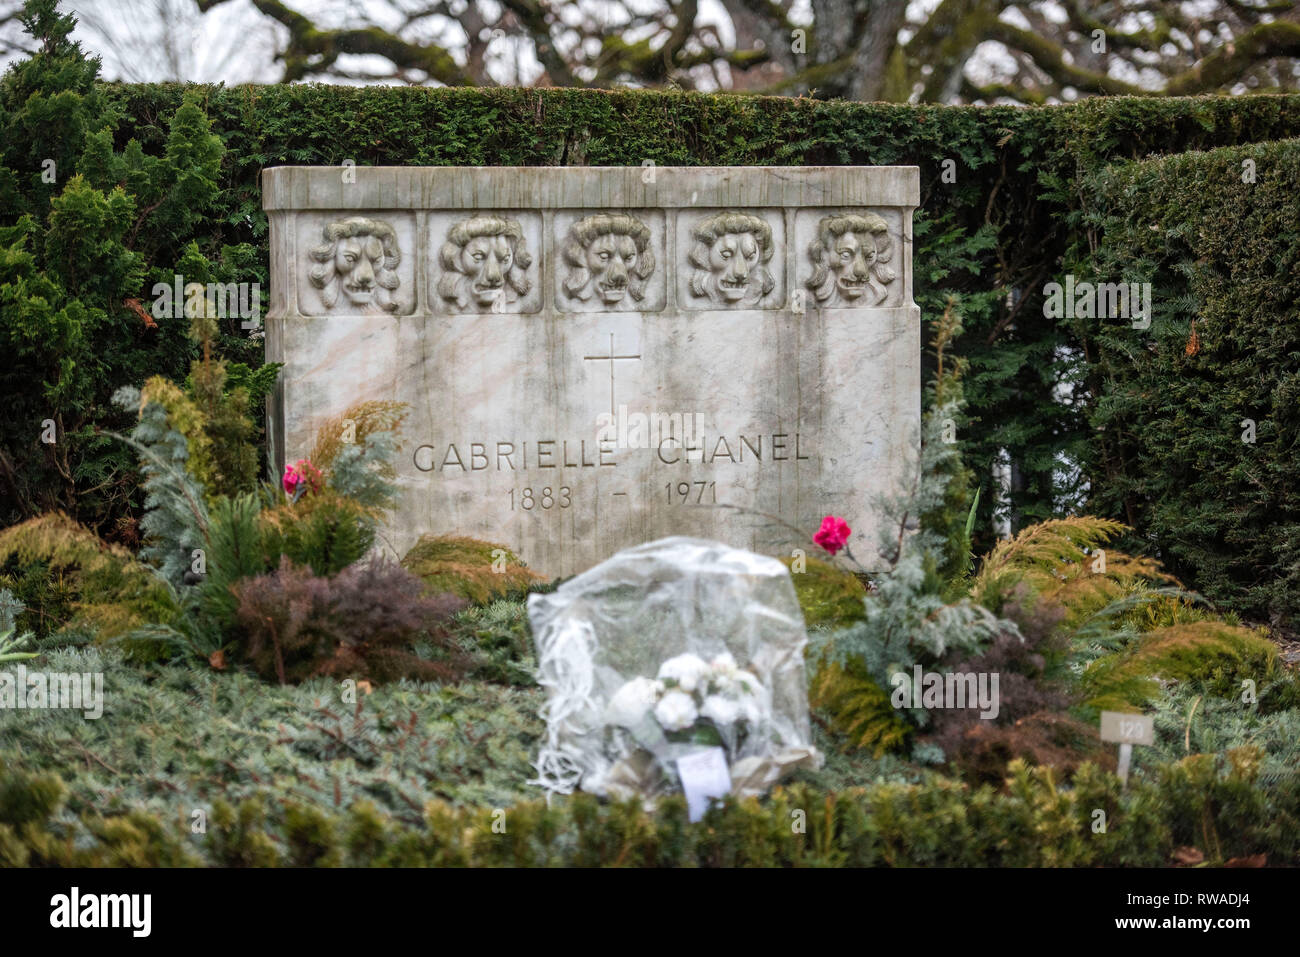 Das Grab von Gabreille "Coco" Chanel in der Cimetière du Bois-de-Vaux  Friedhof in Lausanne, Waadt, Schweiz mit fünf steinernen Löwen auf dem  Grabstein Stockfotografie - Alamy